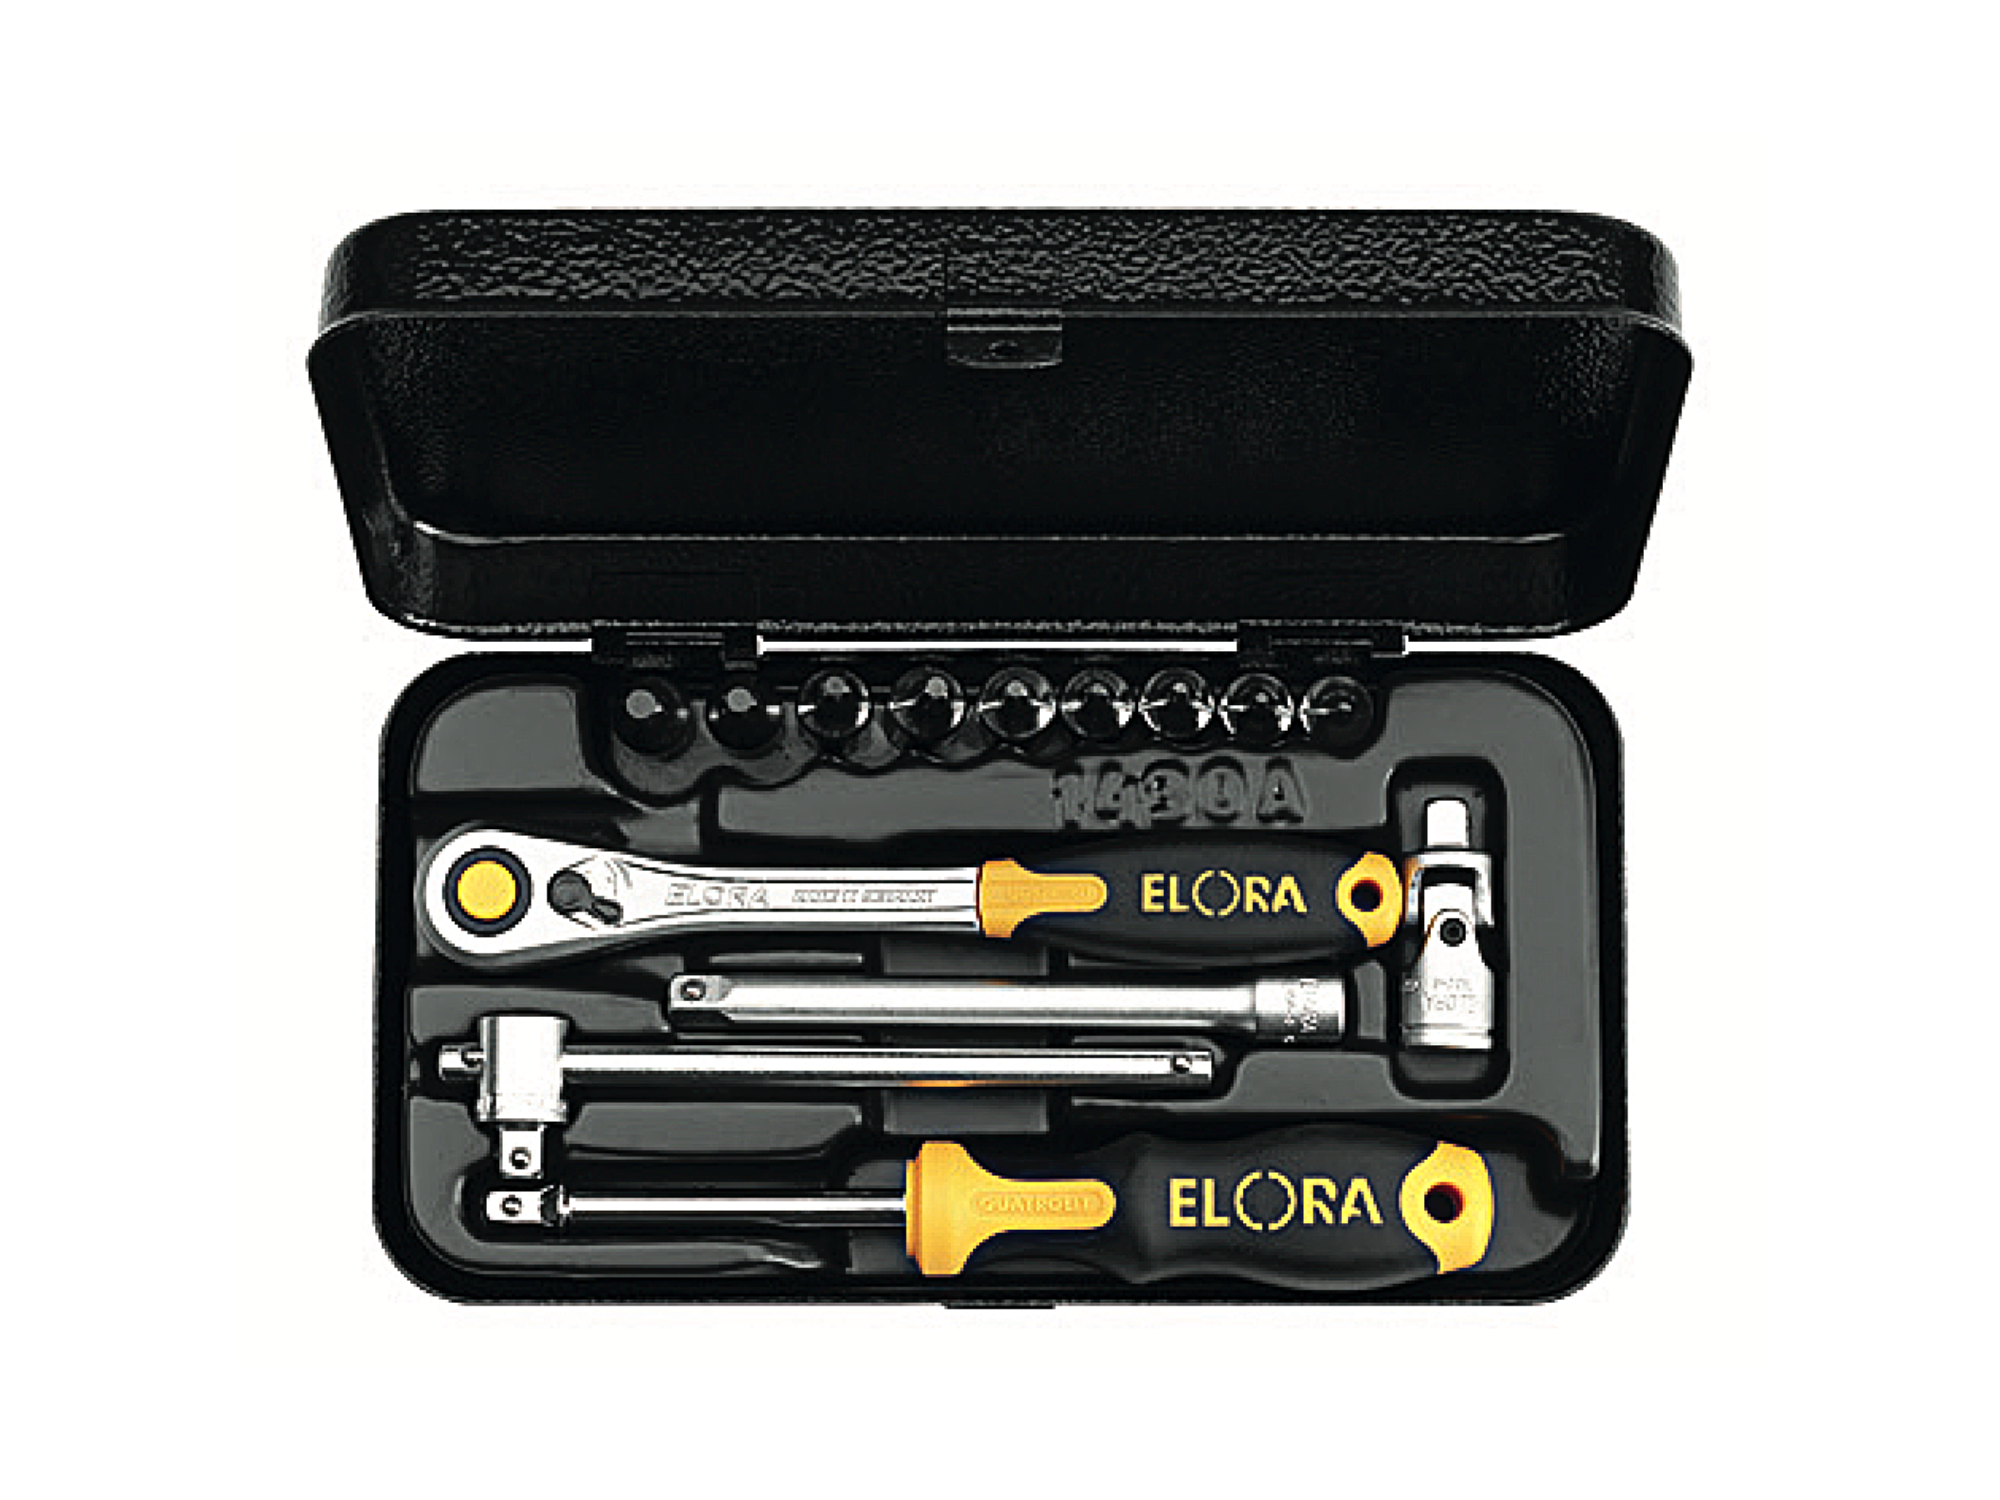 ELORA 1430-TXU 1/4" TORX Socket Set (ELORA Tools) - Premium 1/4" Torx Socket Set from ELORA - Shop now at Yew Aik.